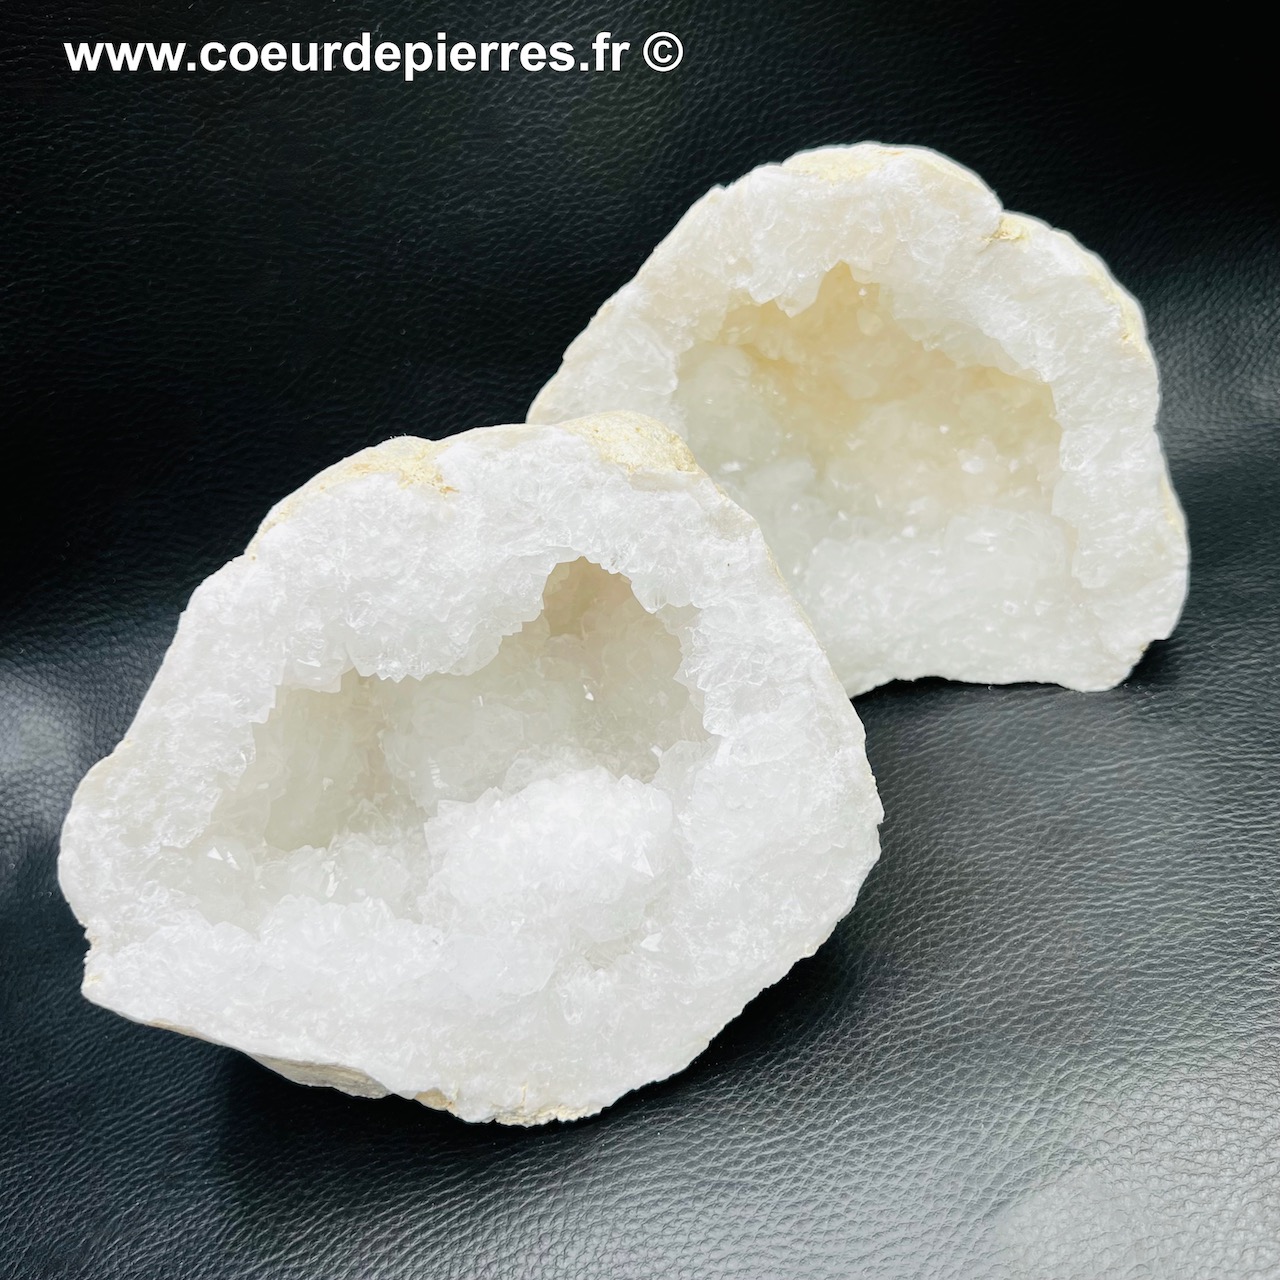 Géode de cristal de roche 2,531 kg du Maroc (réf gcr21)